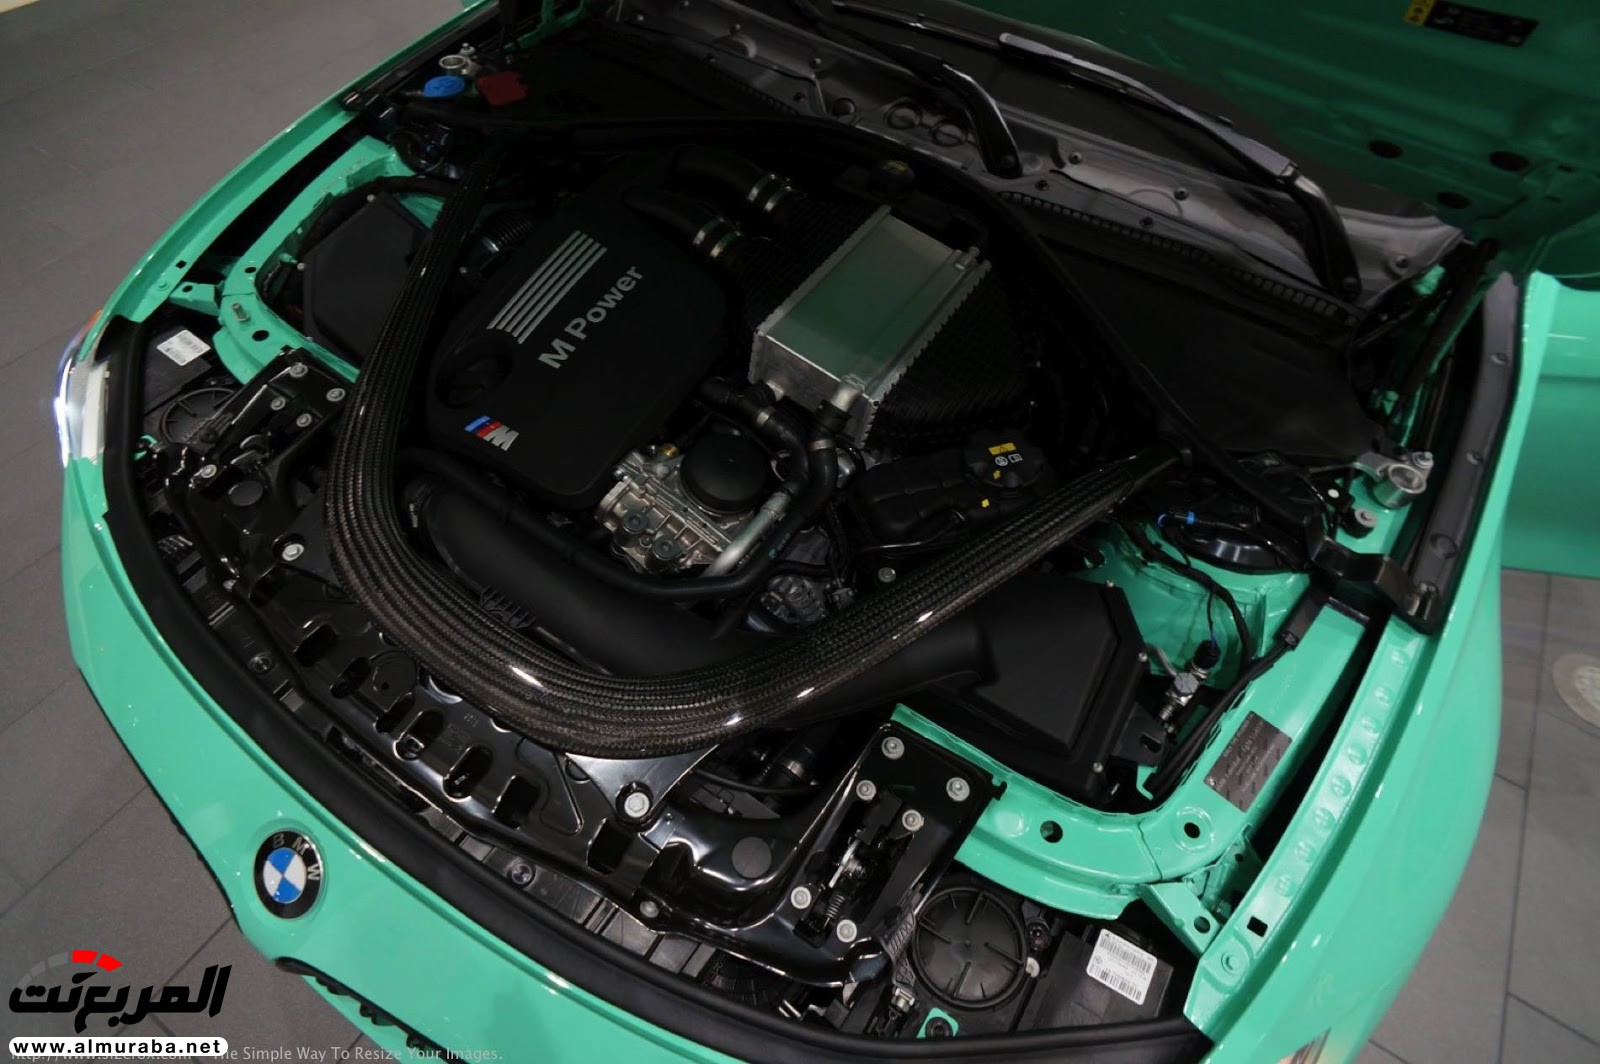 "بالصور" شاهد "بي إم دبليو" F80 M3 الخاصة بطلاء النعناع الأخضر BMW 120